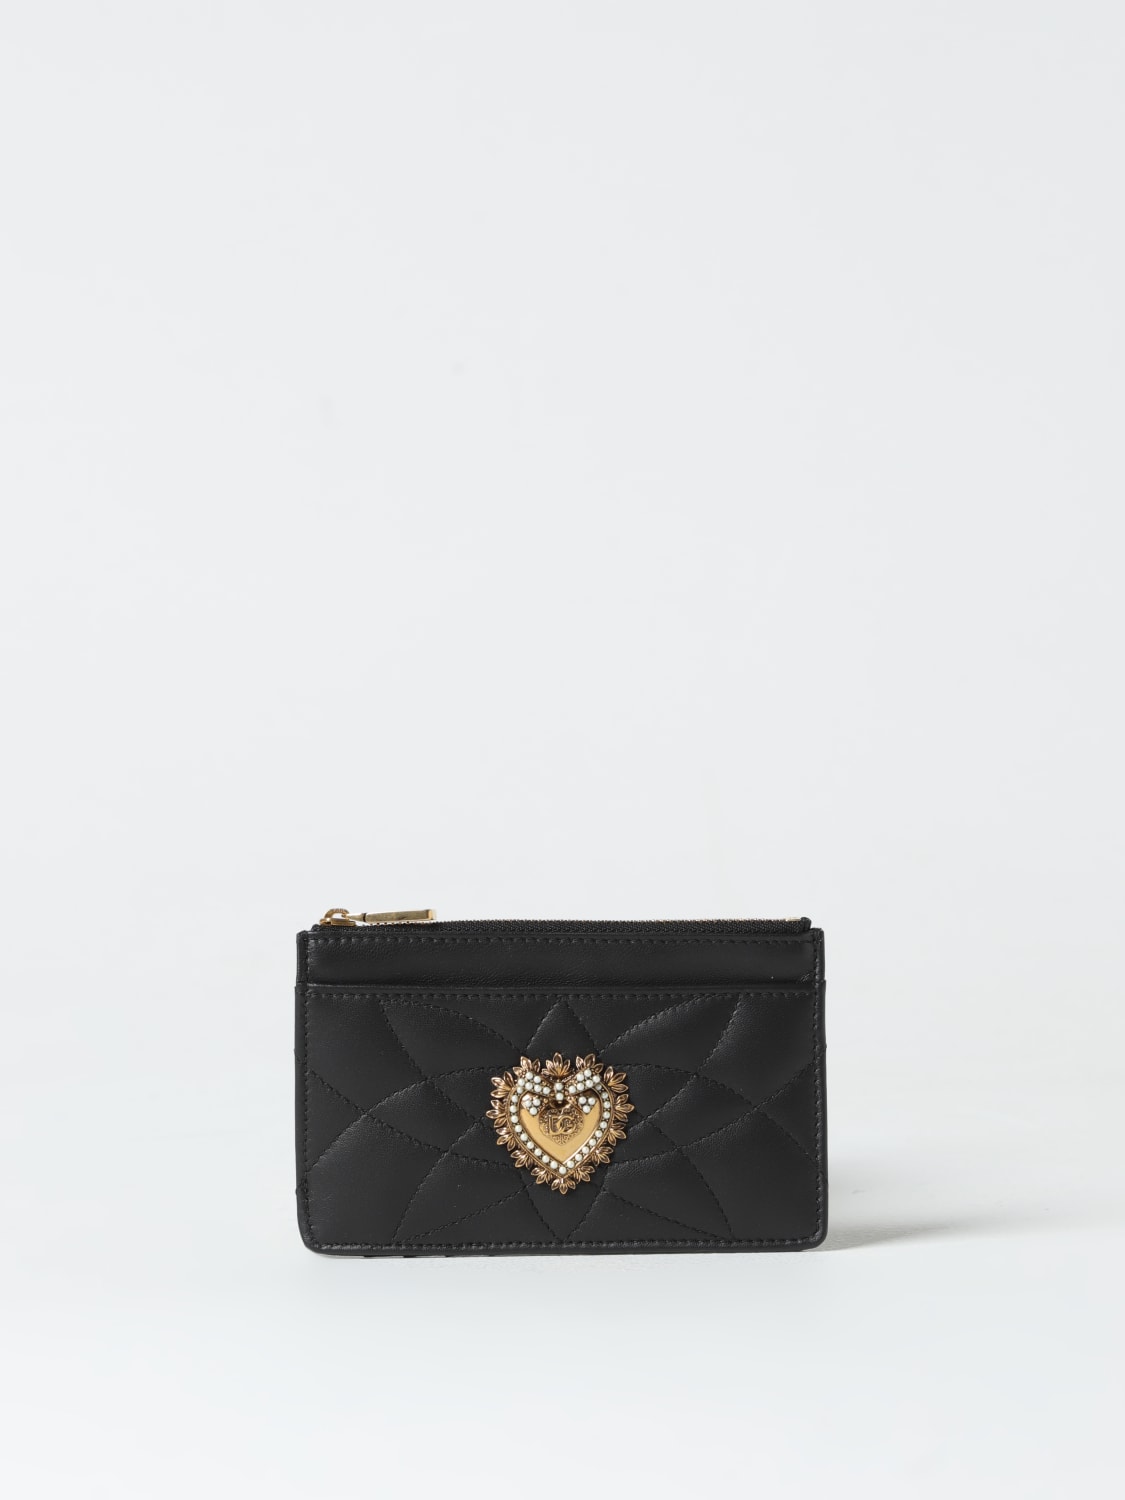 Dolce & Gabbana Devotion credit card holder in nappa